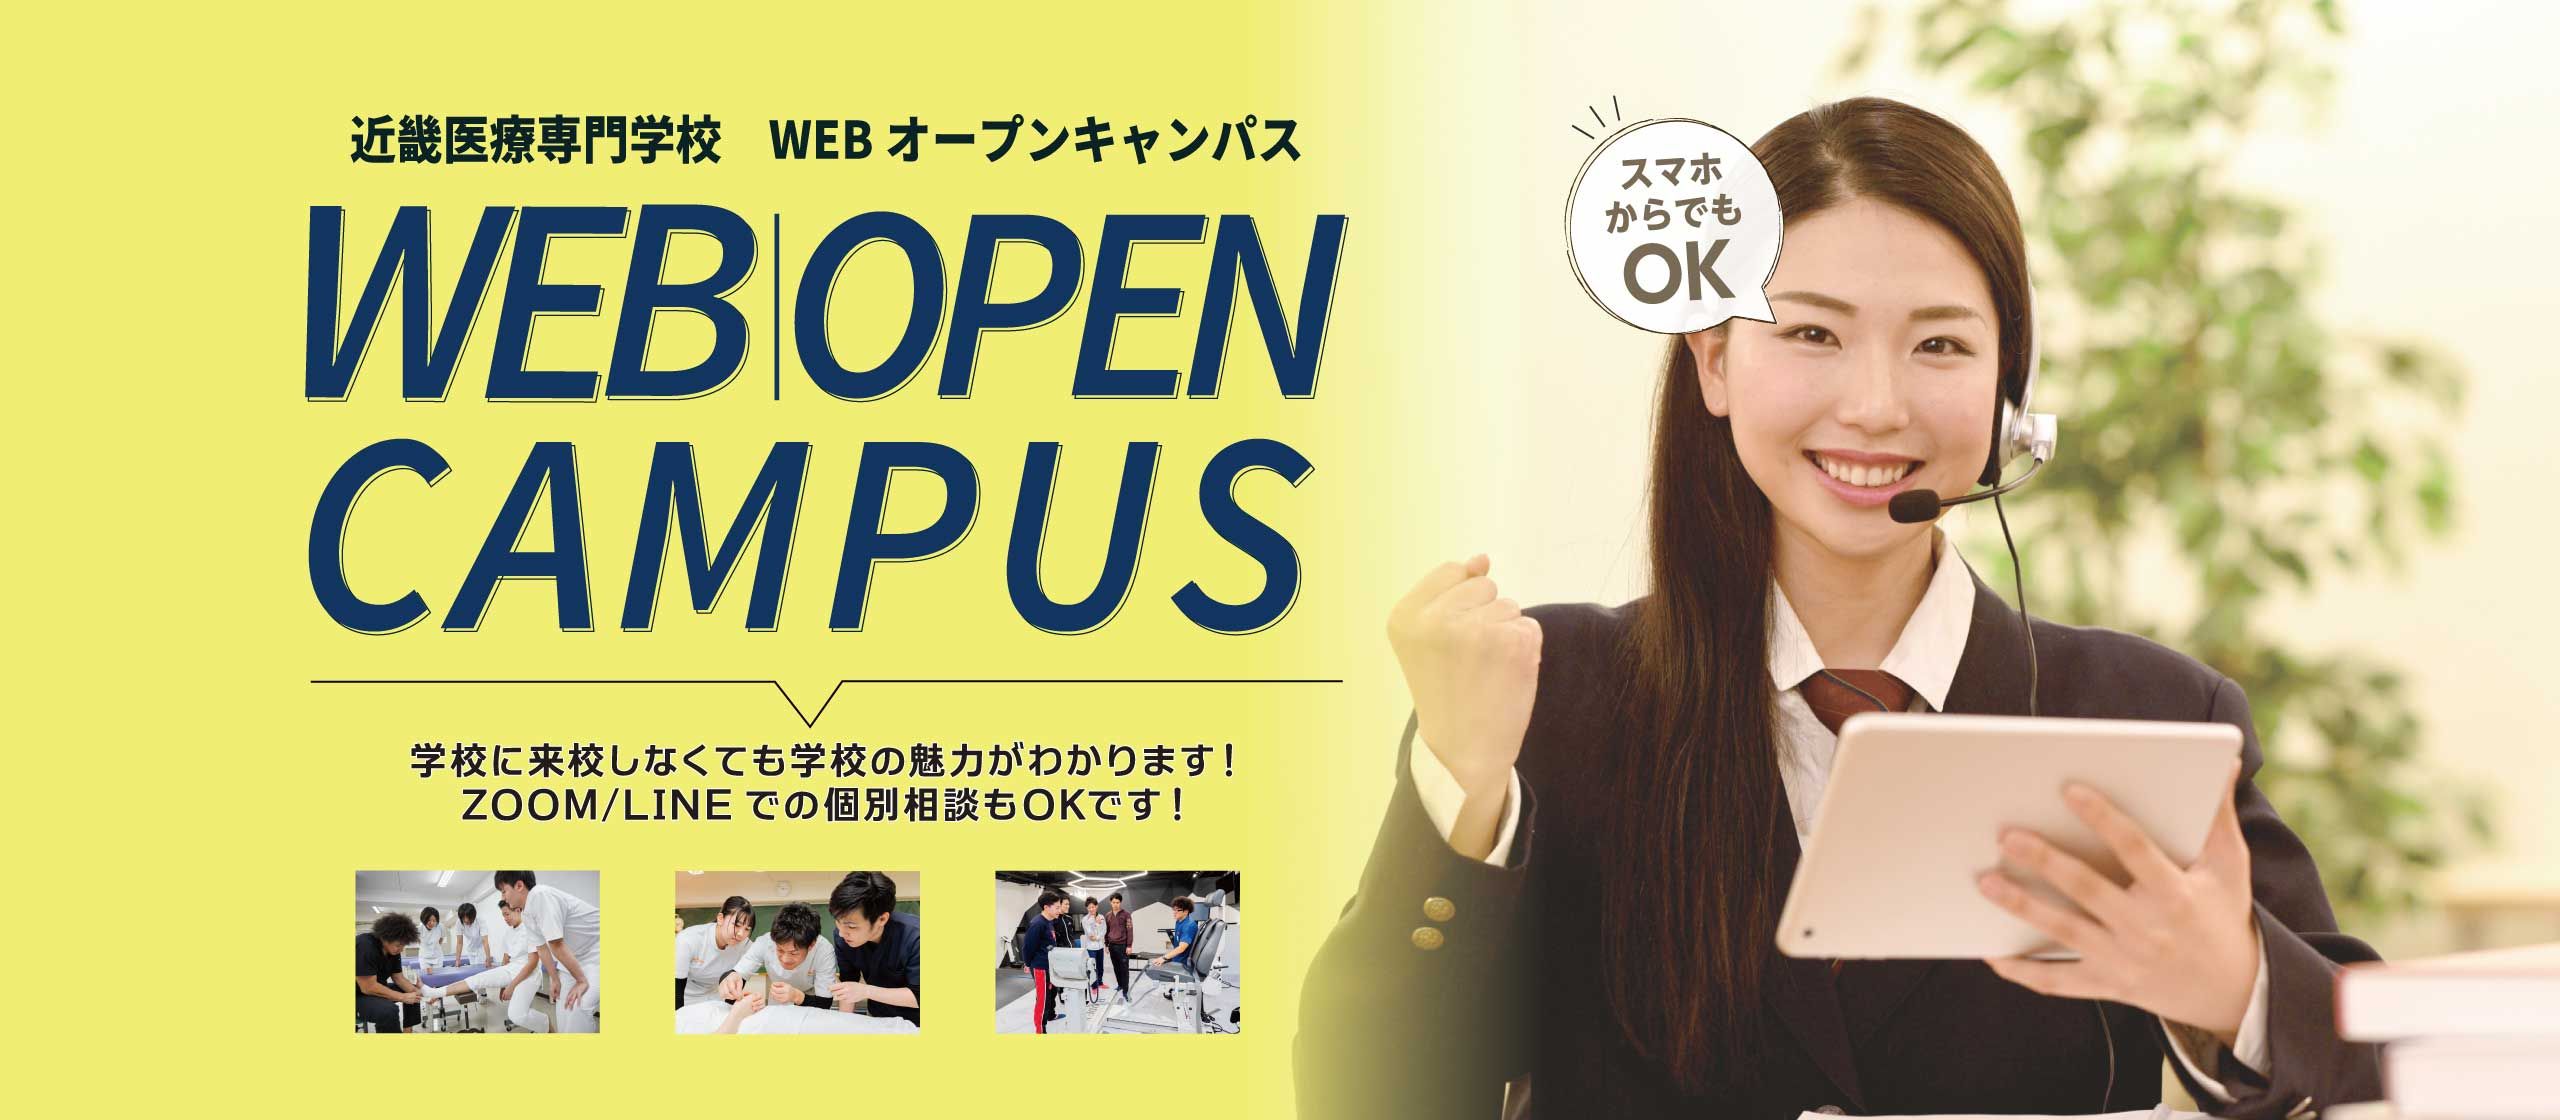 近畿医療専門学校WEBオープンキャンパス